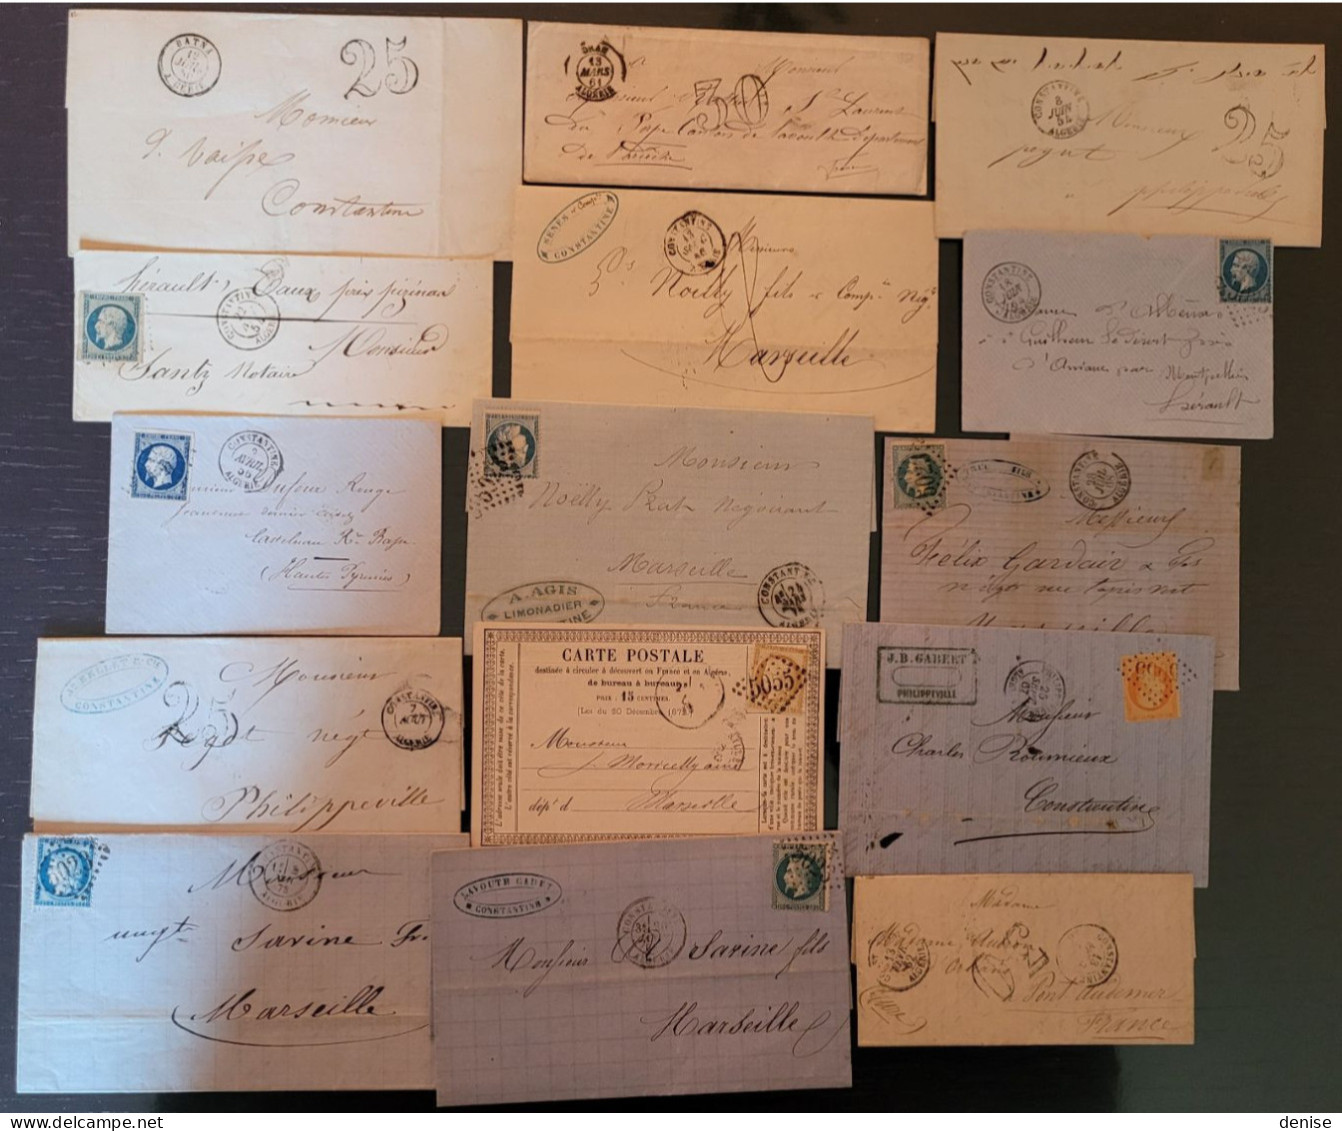 France -Lot De 30 Lettres  Classiques D'ALGERIE    - DEPART 1 Euro Hors Frais De Plate Forme - 1849-1876: Periodo Clásico